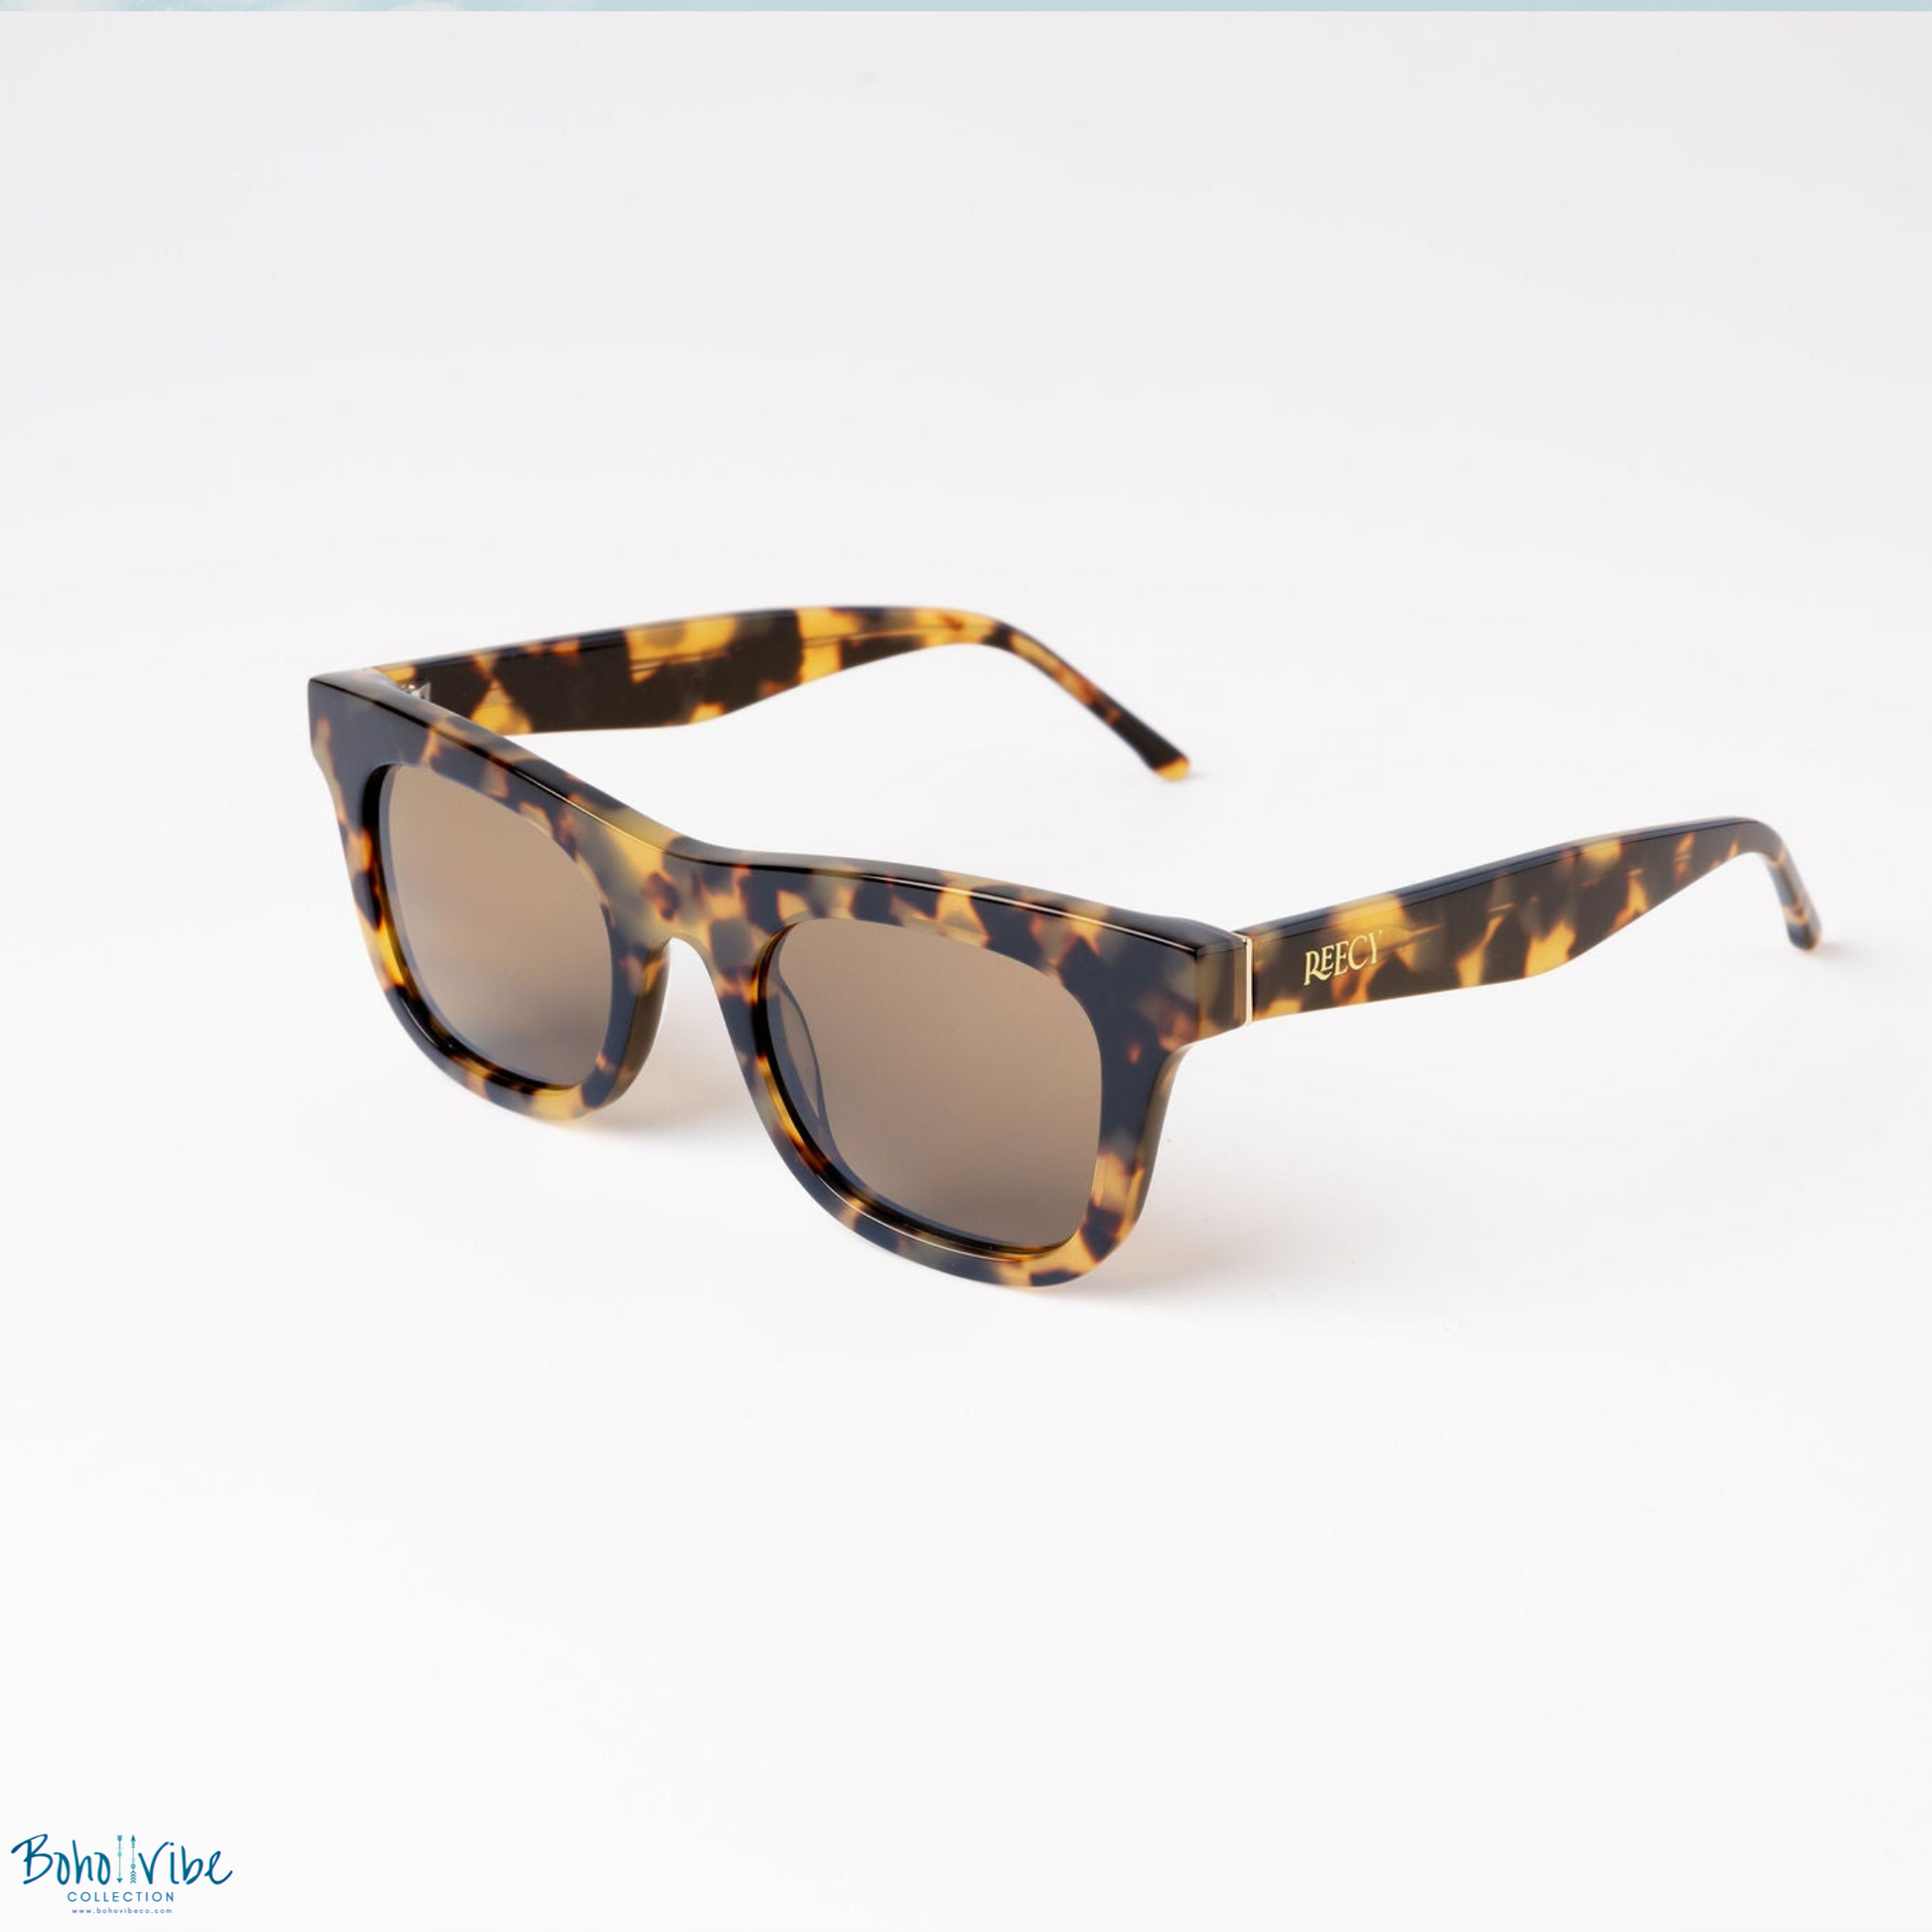 Boho ↡↟ Vibe Collection ↠ The Ike Brûlée Tortoiseshell Sunglasses